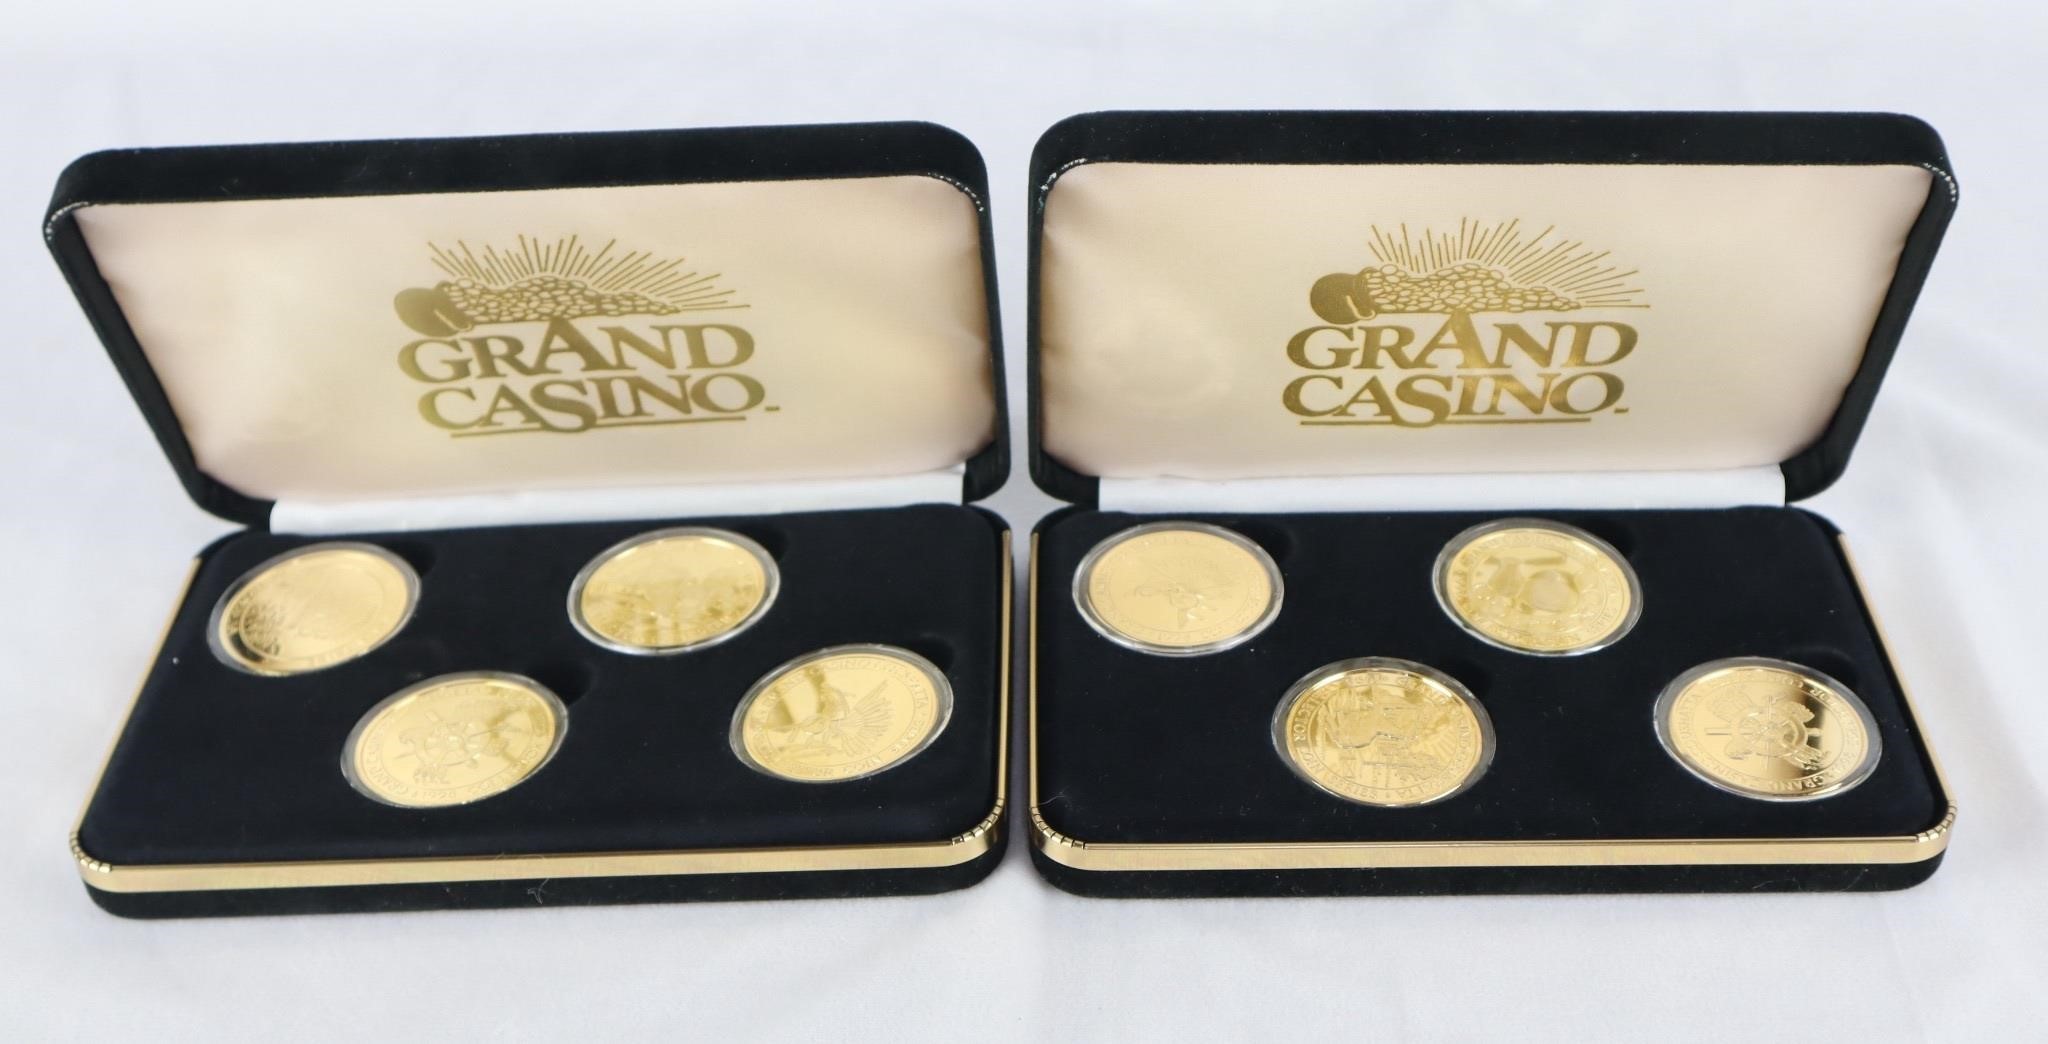 Grand Casino Gold-Tone Collectors Tokens